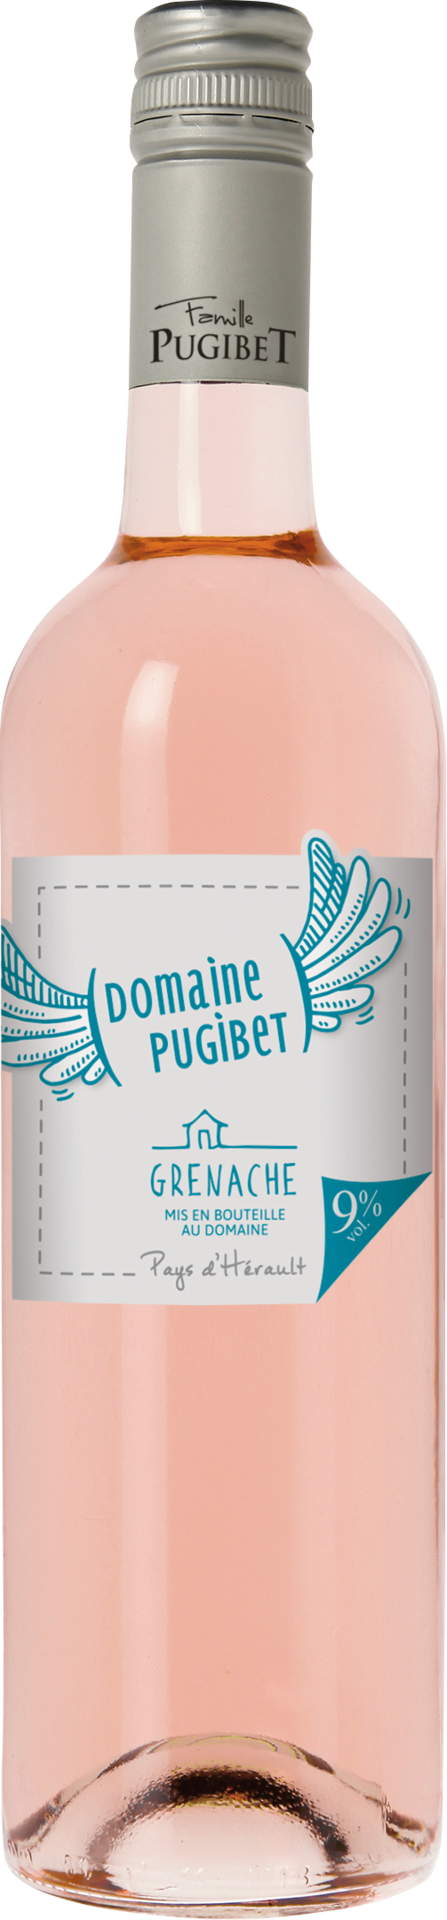 Pugibet Rosé, Grenache